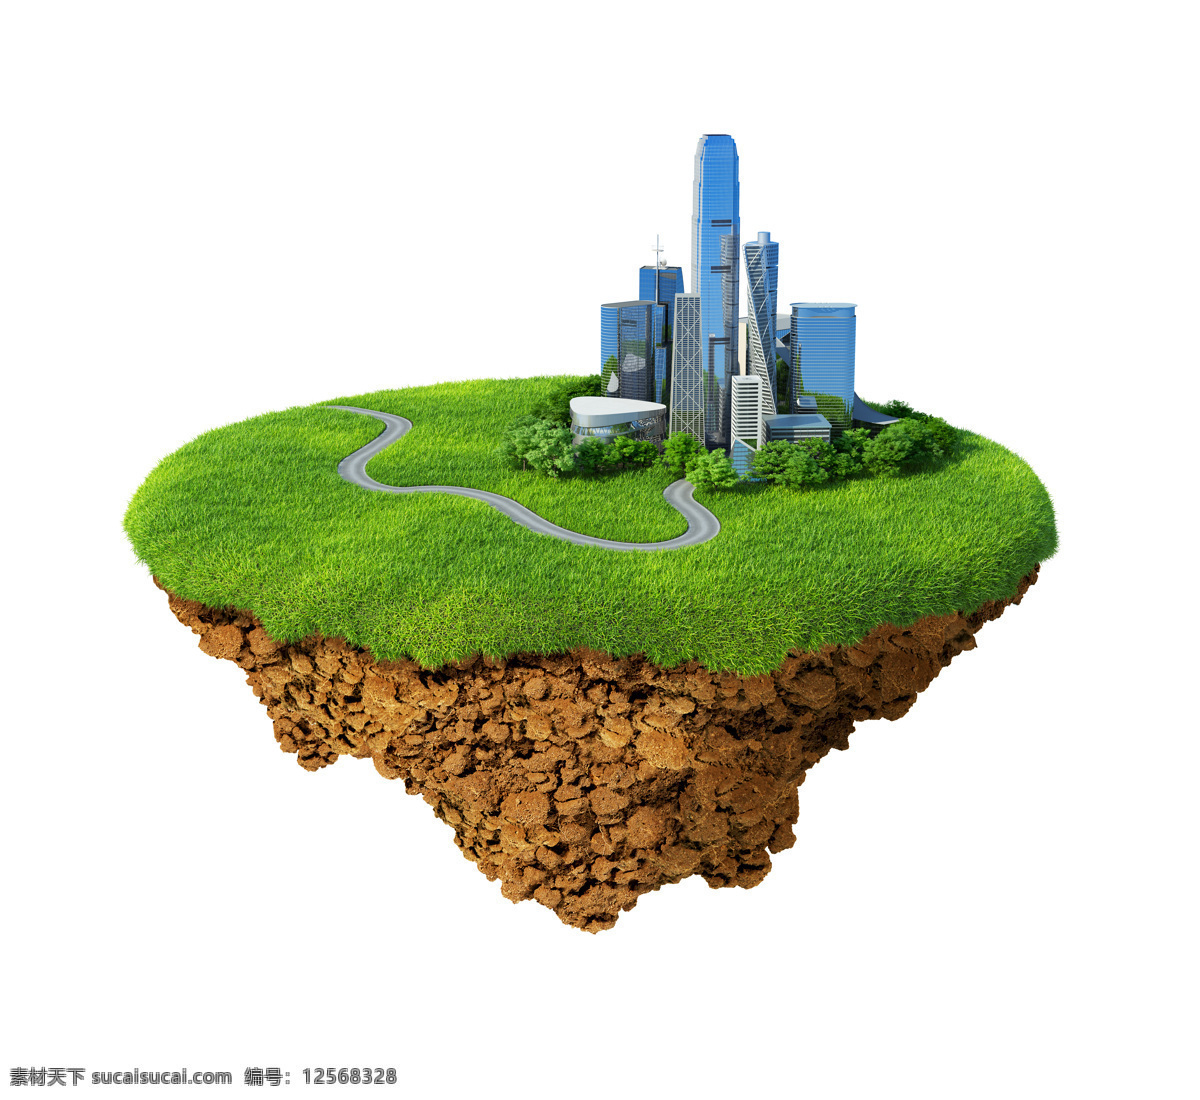 绿色城市 绿色 城市 建筑 高楼 大厦 公路 环保 生态 土壤 地表 绿草 草地 低碳 节能 背景 环保素材